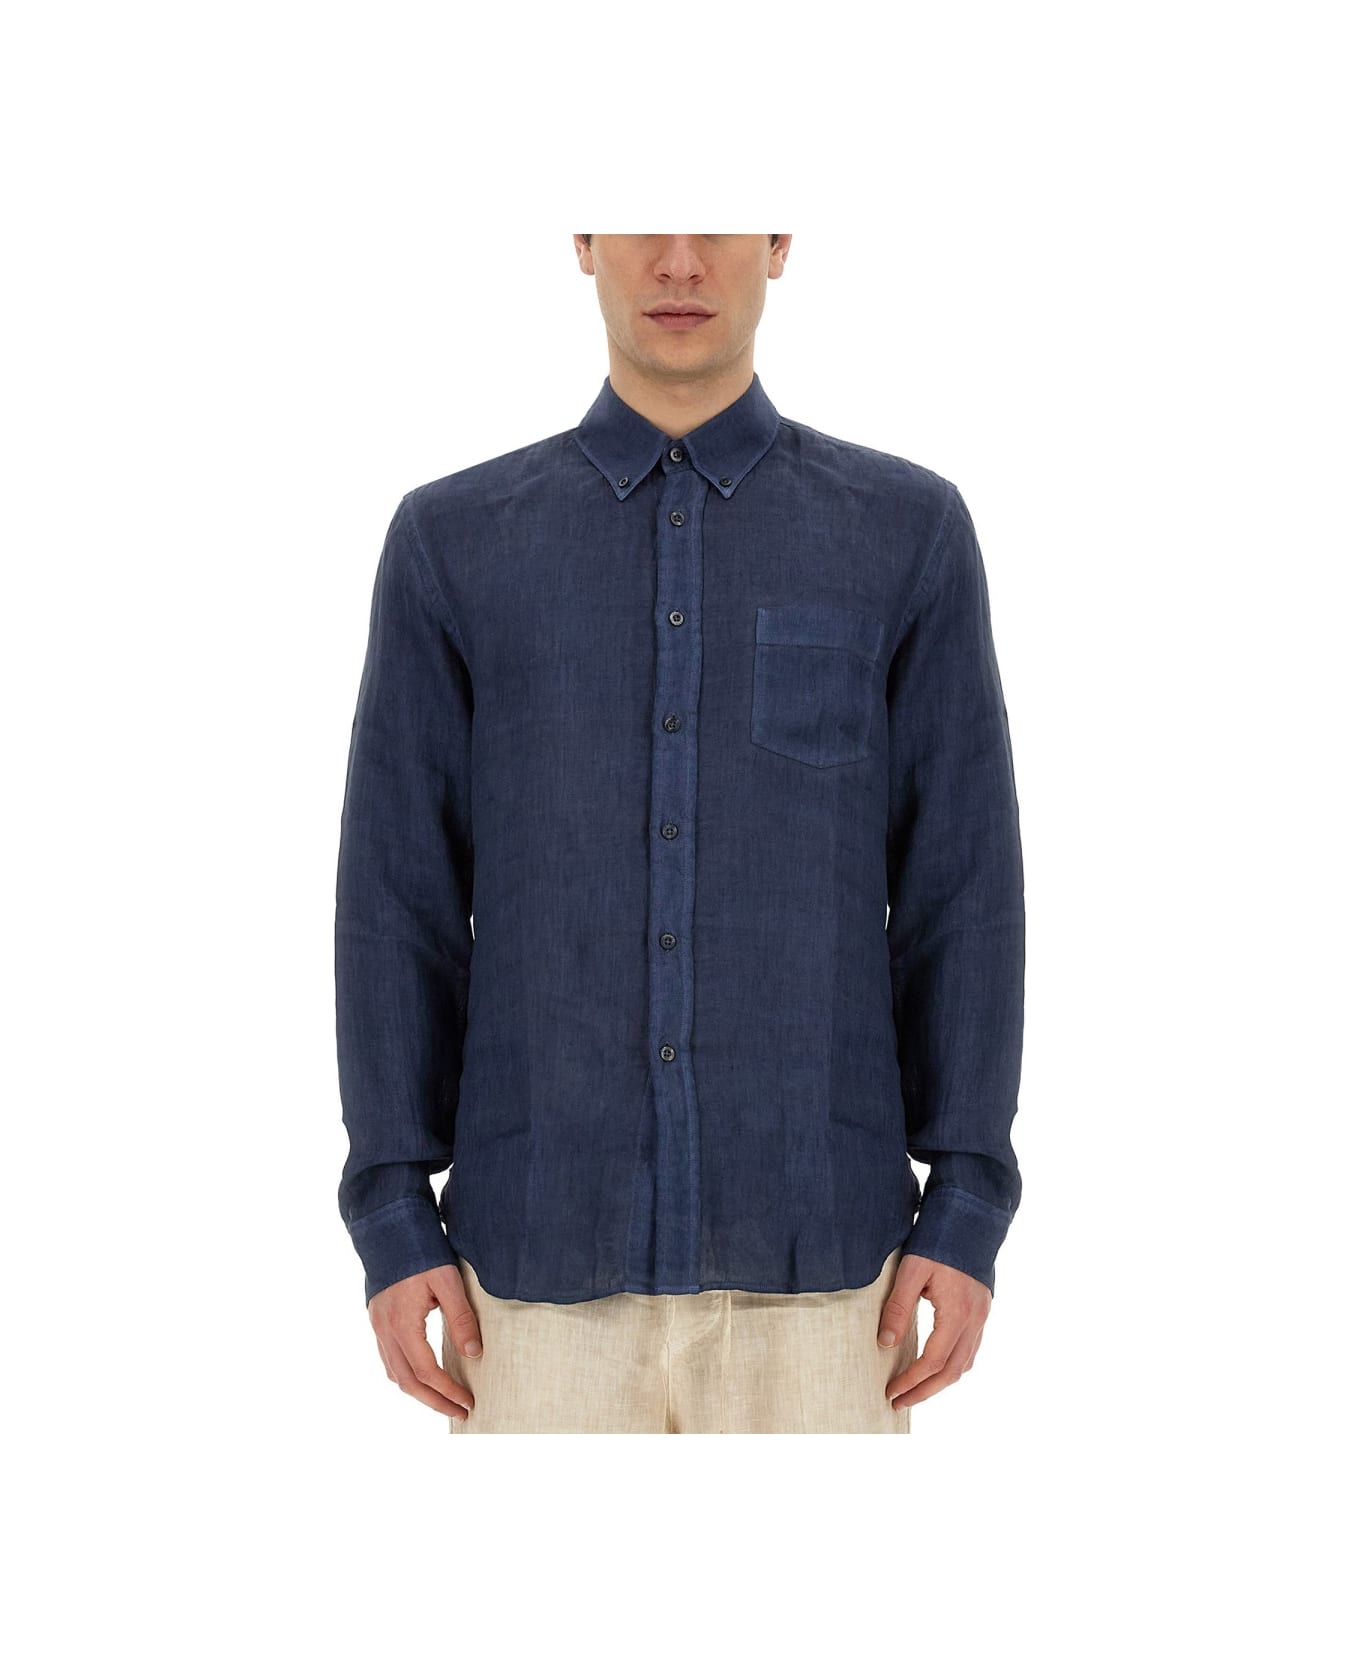 120% Lino Linen Shirt - BLUE シャツ